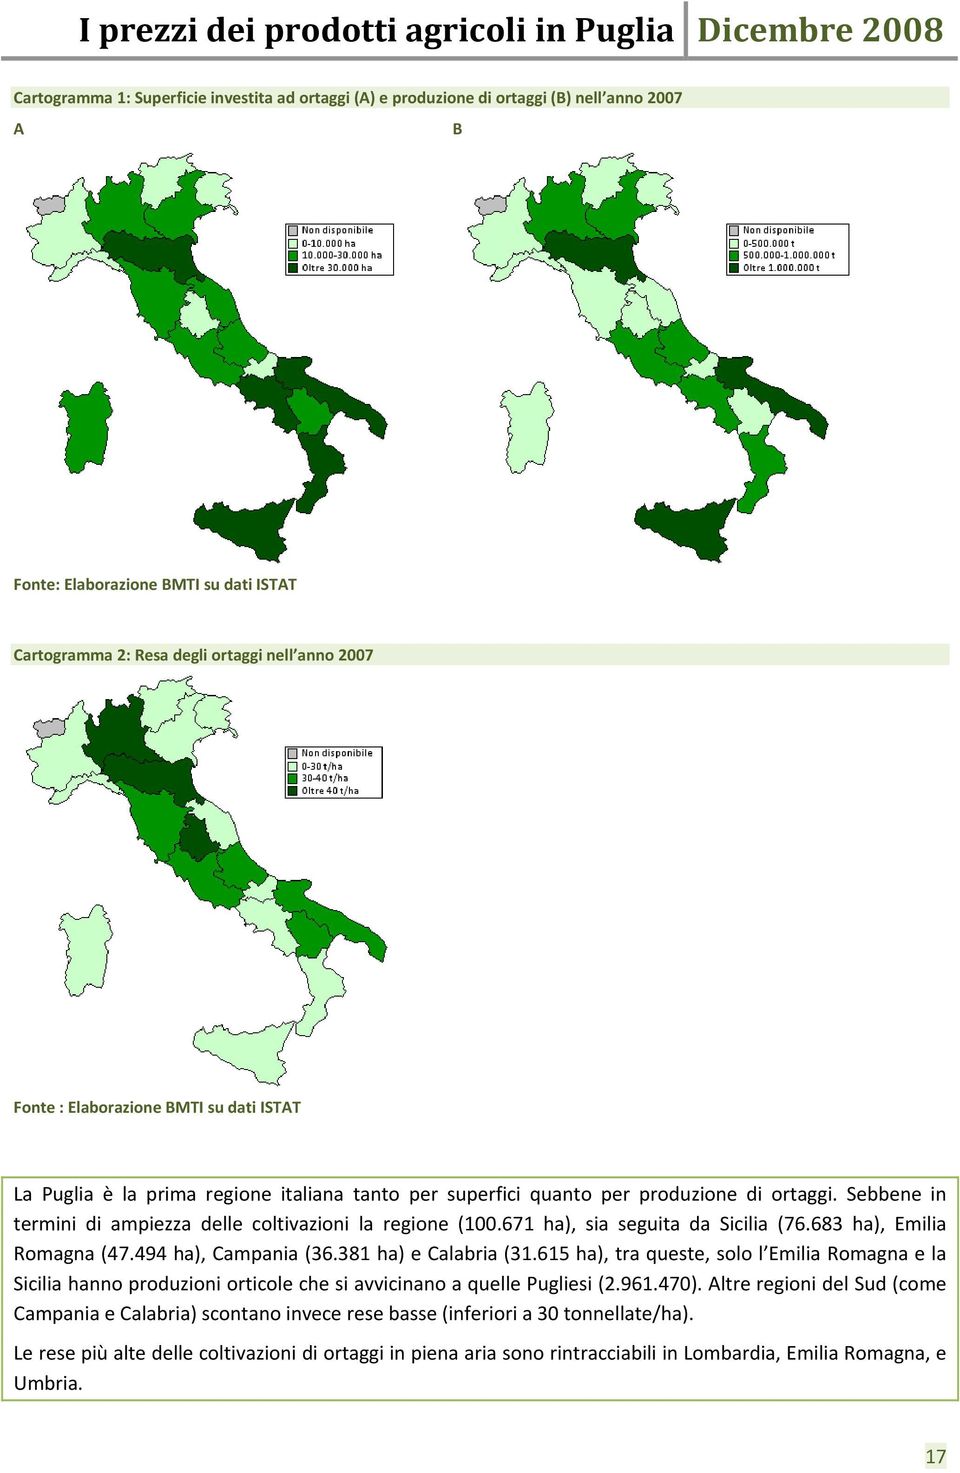 683 ha), Emilia Romagna (47.494 ha), Campania (36.381 ha) e Calabria (31.615 ha), tra queste, solo l Emilia Romagna e la Sicilia hanno produzioni orticole che si avvicinano a quelle Pugliesi (2.961.